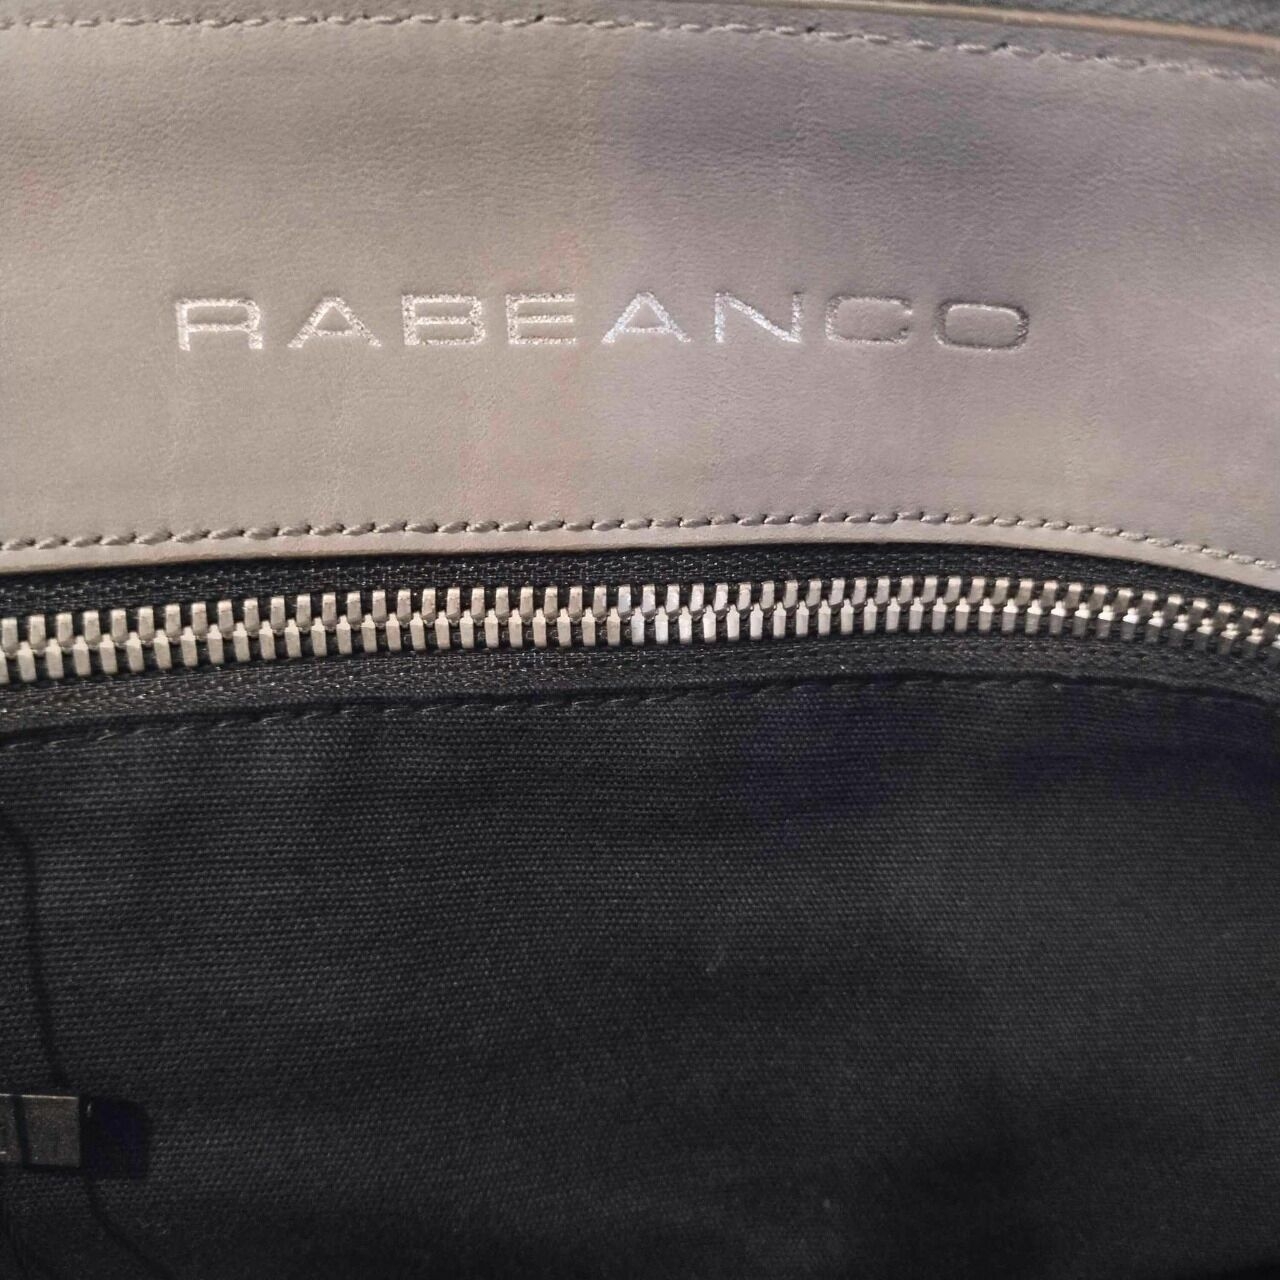 Rabeanco Grey Shoulder Bag